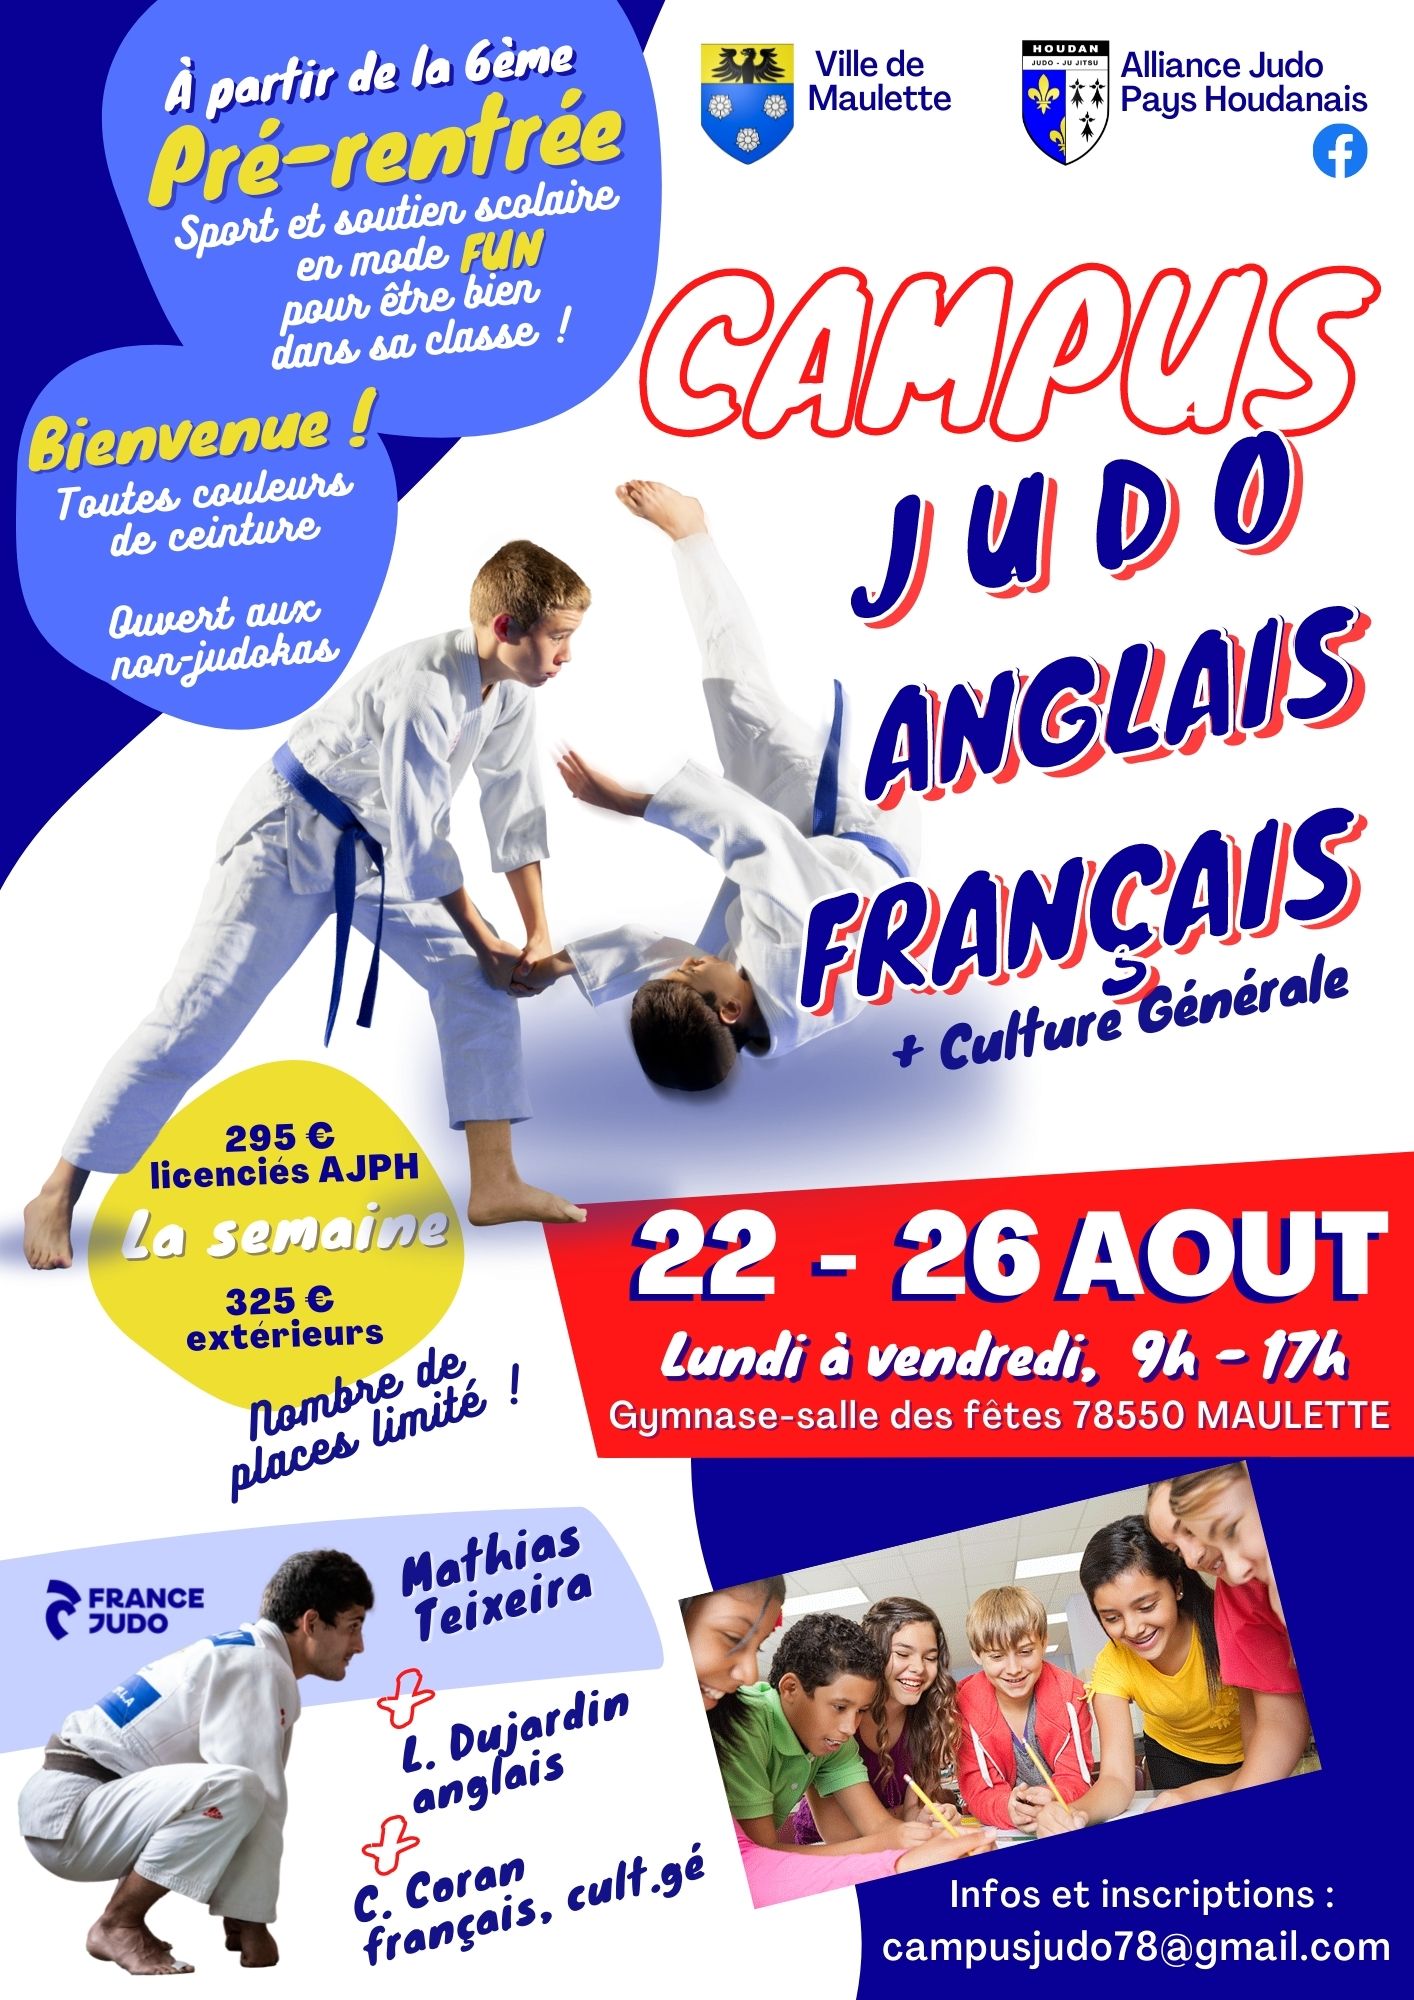 Campus Judo + Anglais + Français